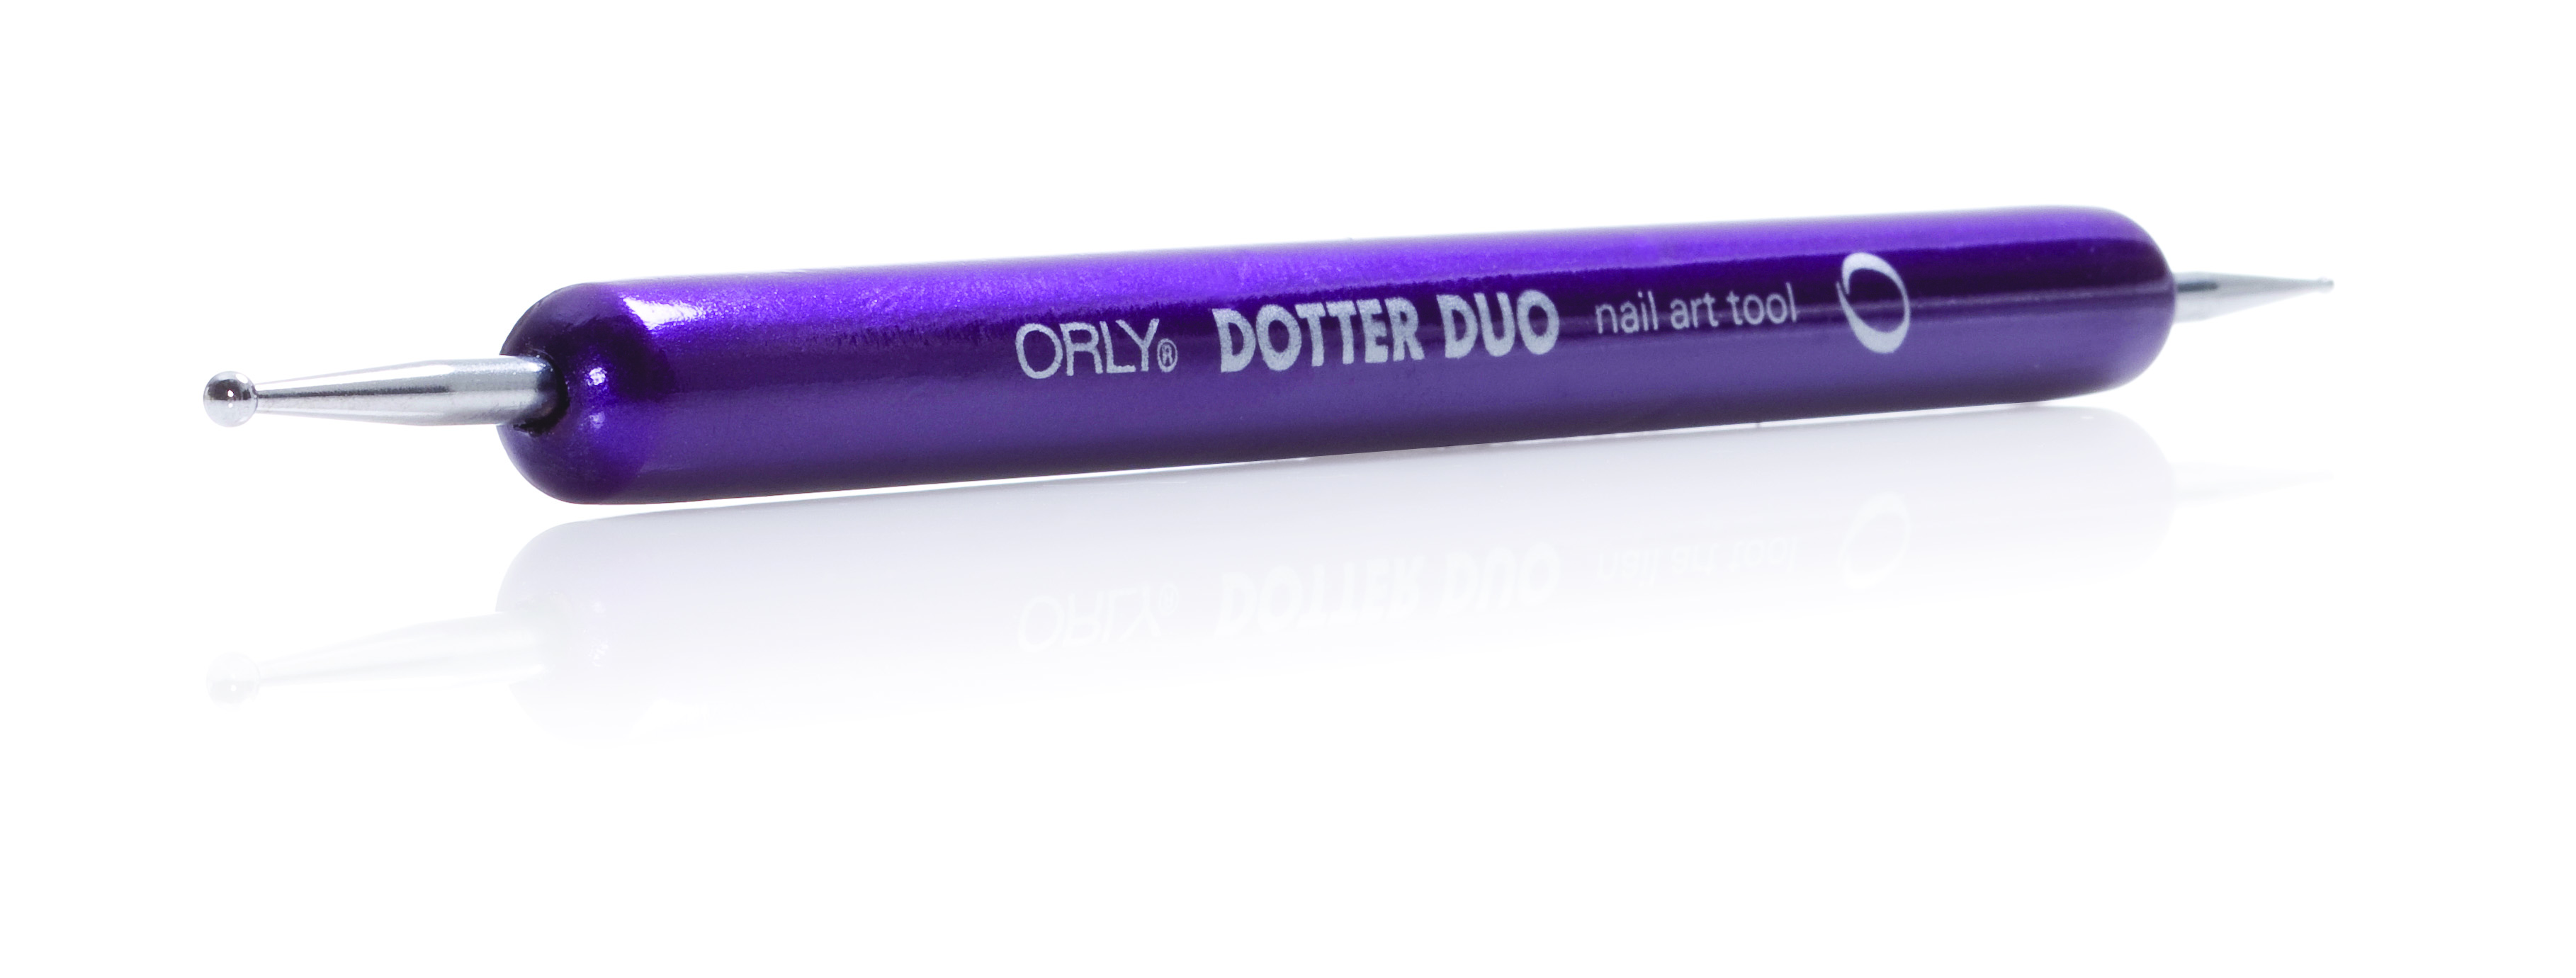 ORLY Дотс двусторонний для дизайна / Brush Nail Artist Dotte